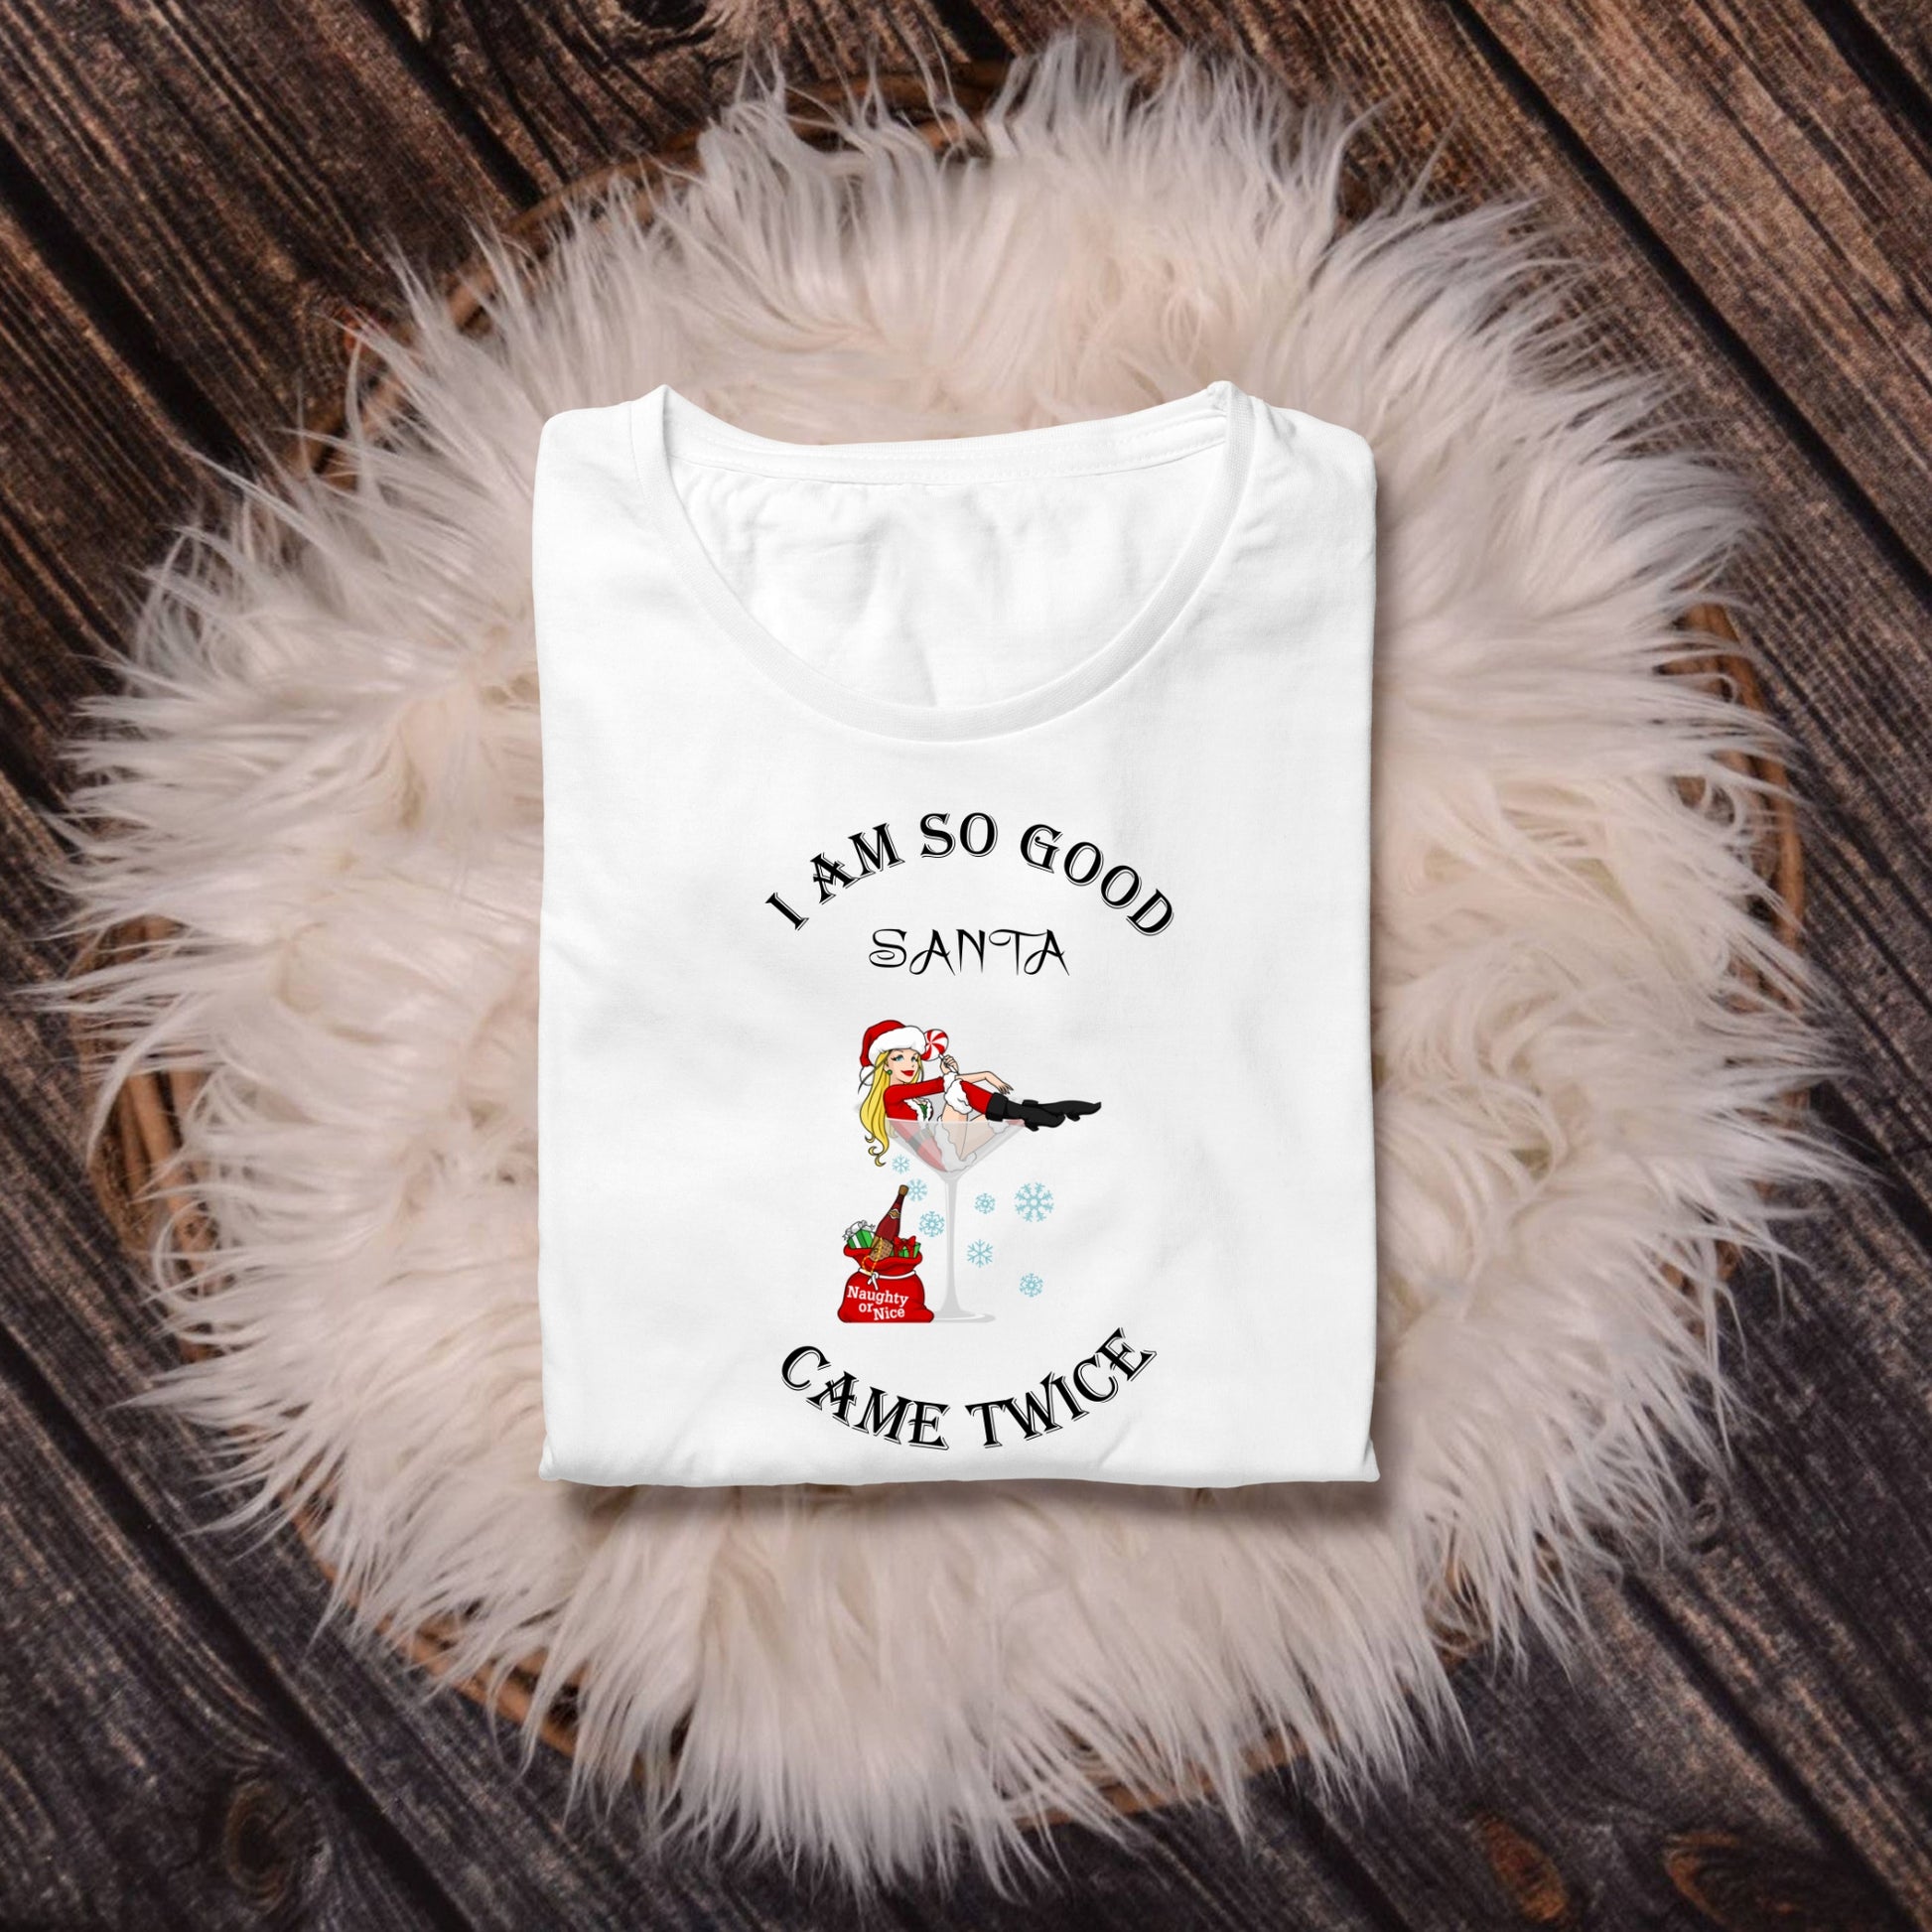 Tricou personalizat Craciun cu mesajul I Am So Good Santa Came Twice